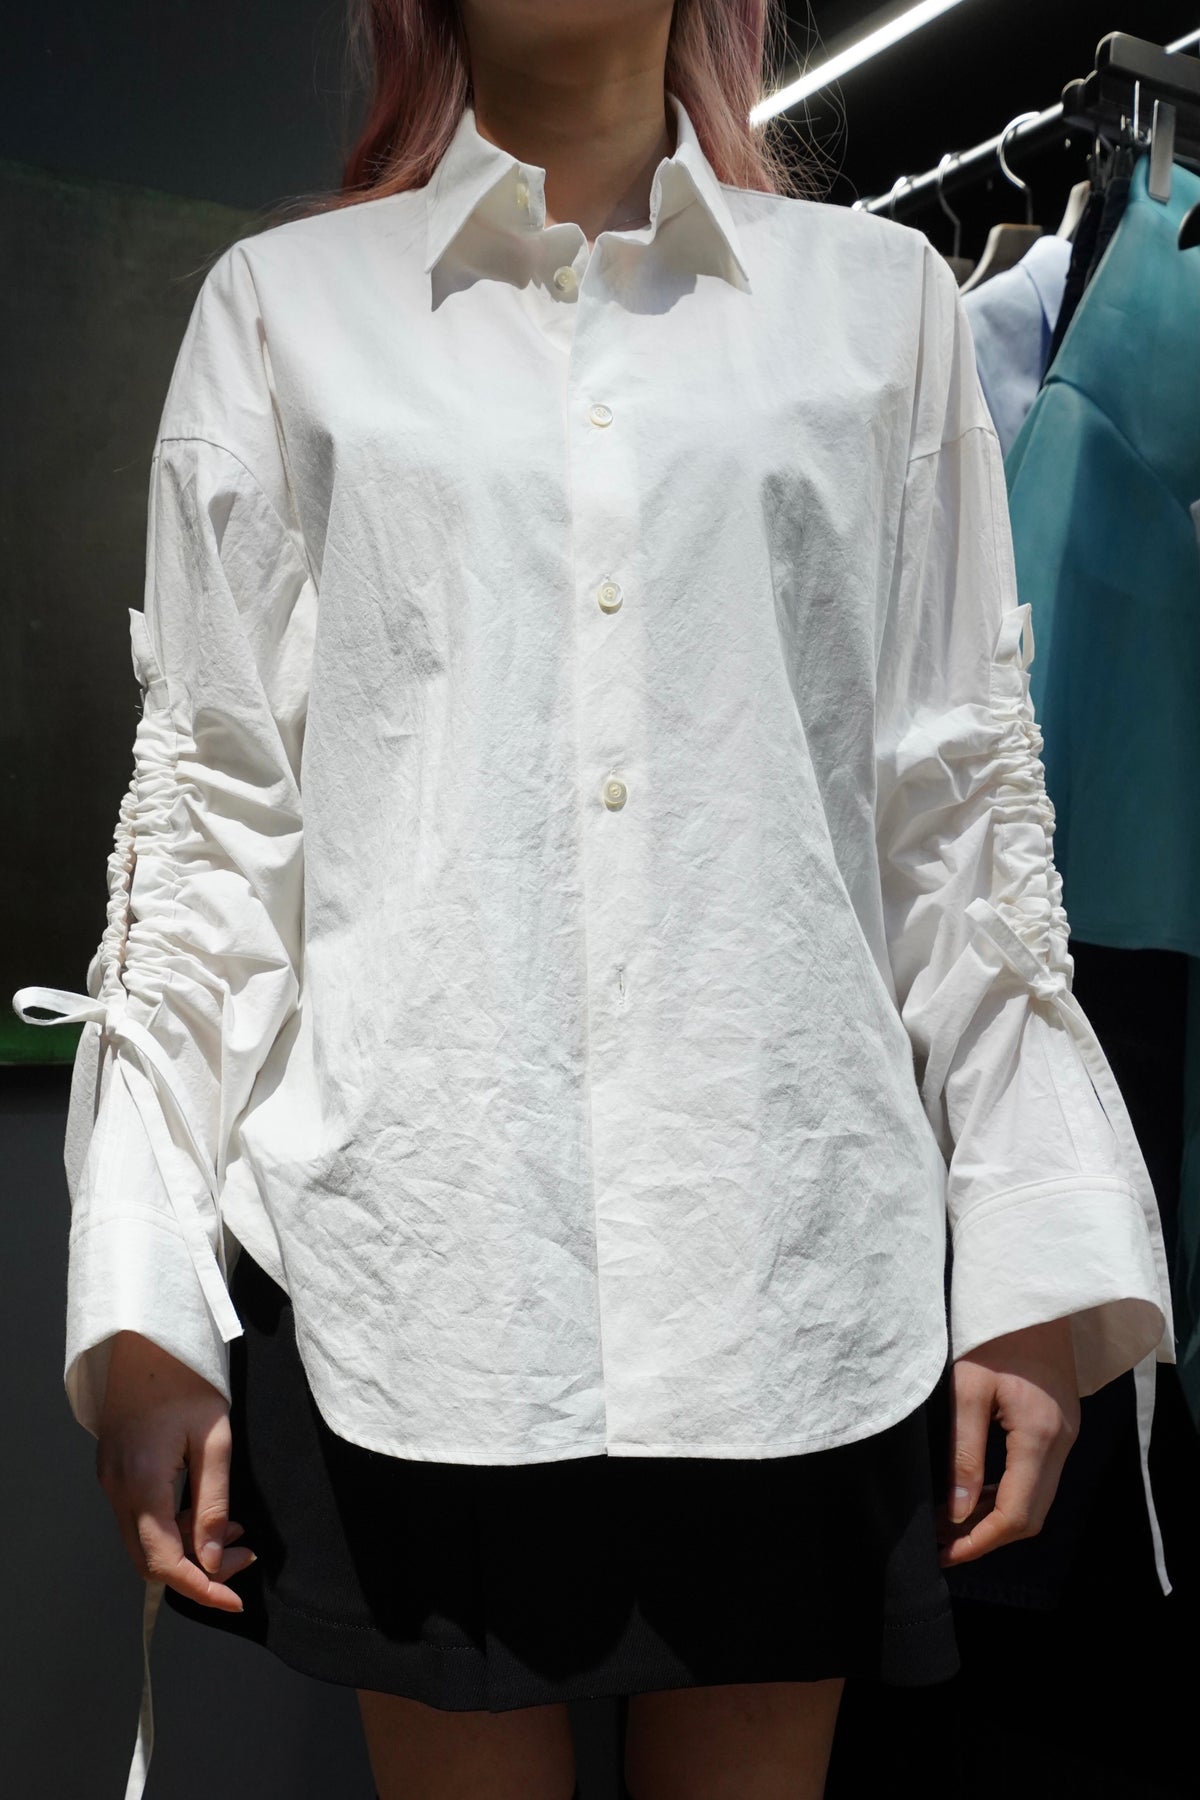 ujoh Gathered Hole Sleeve Shirt (White)patma